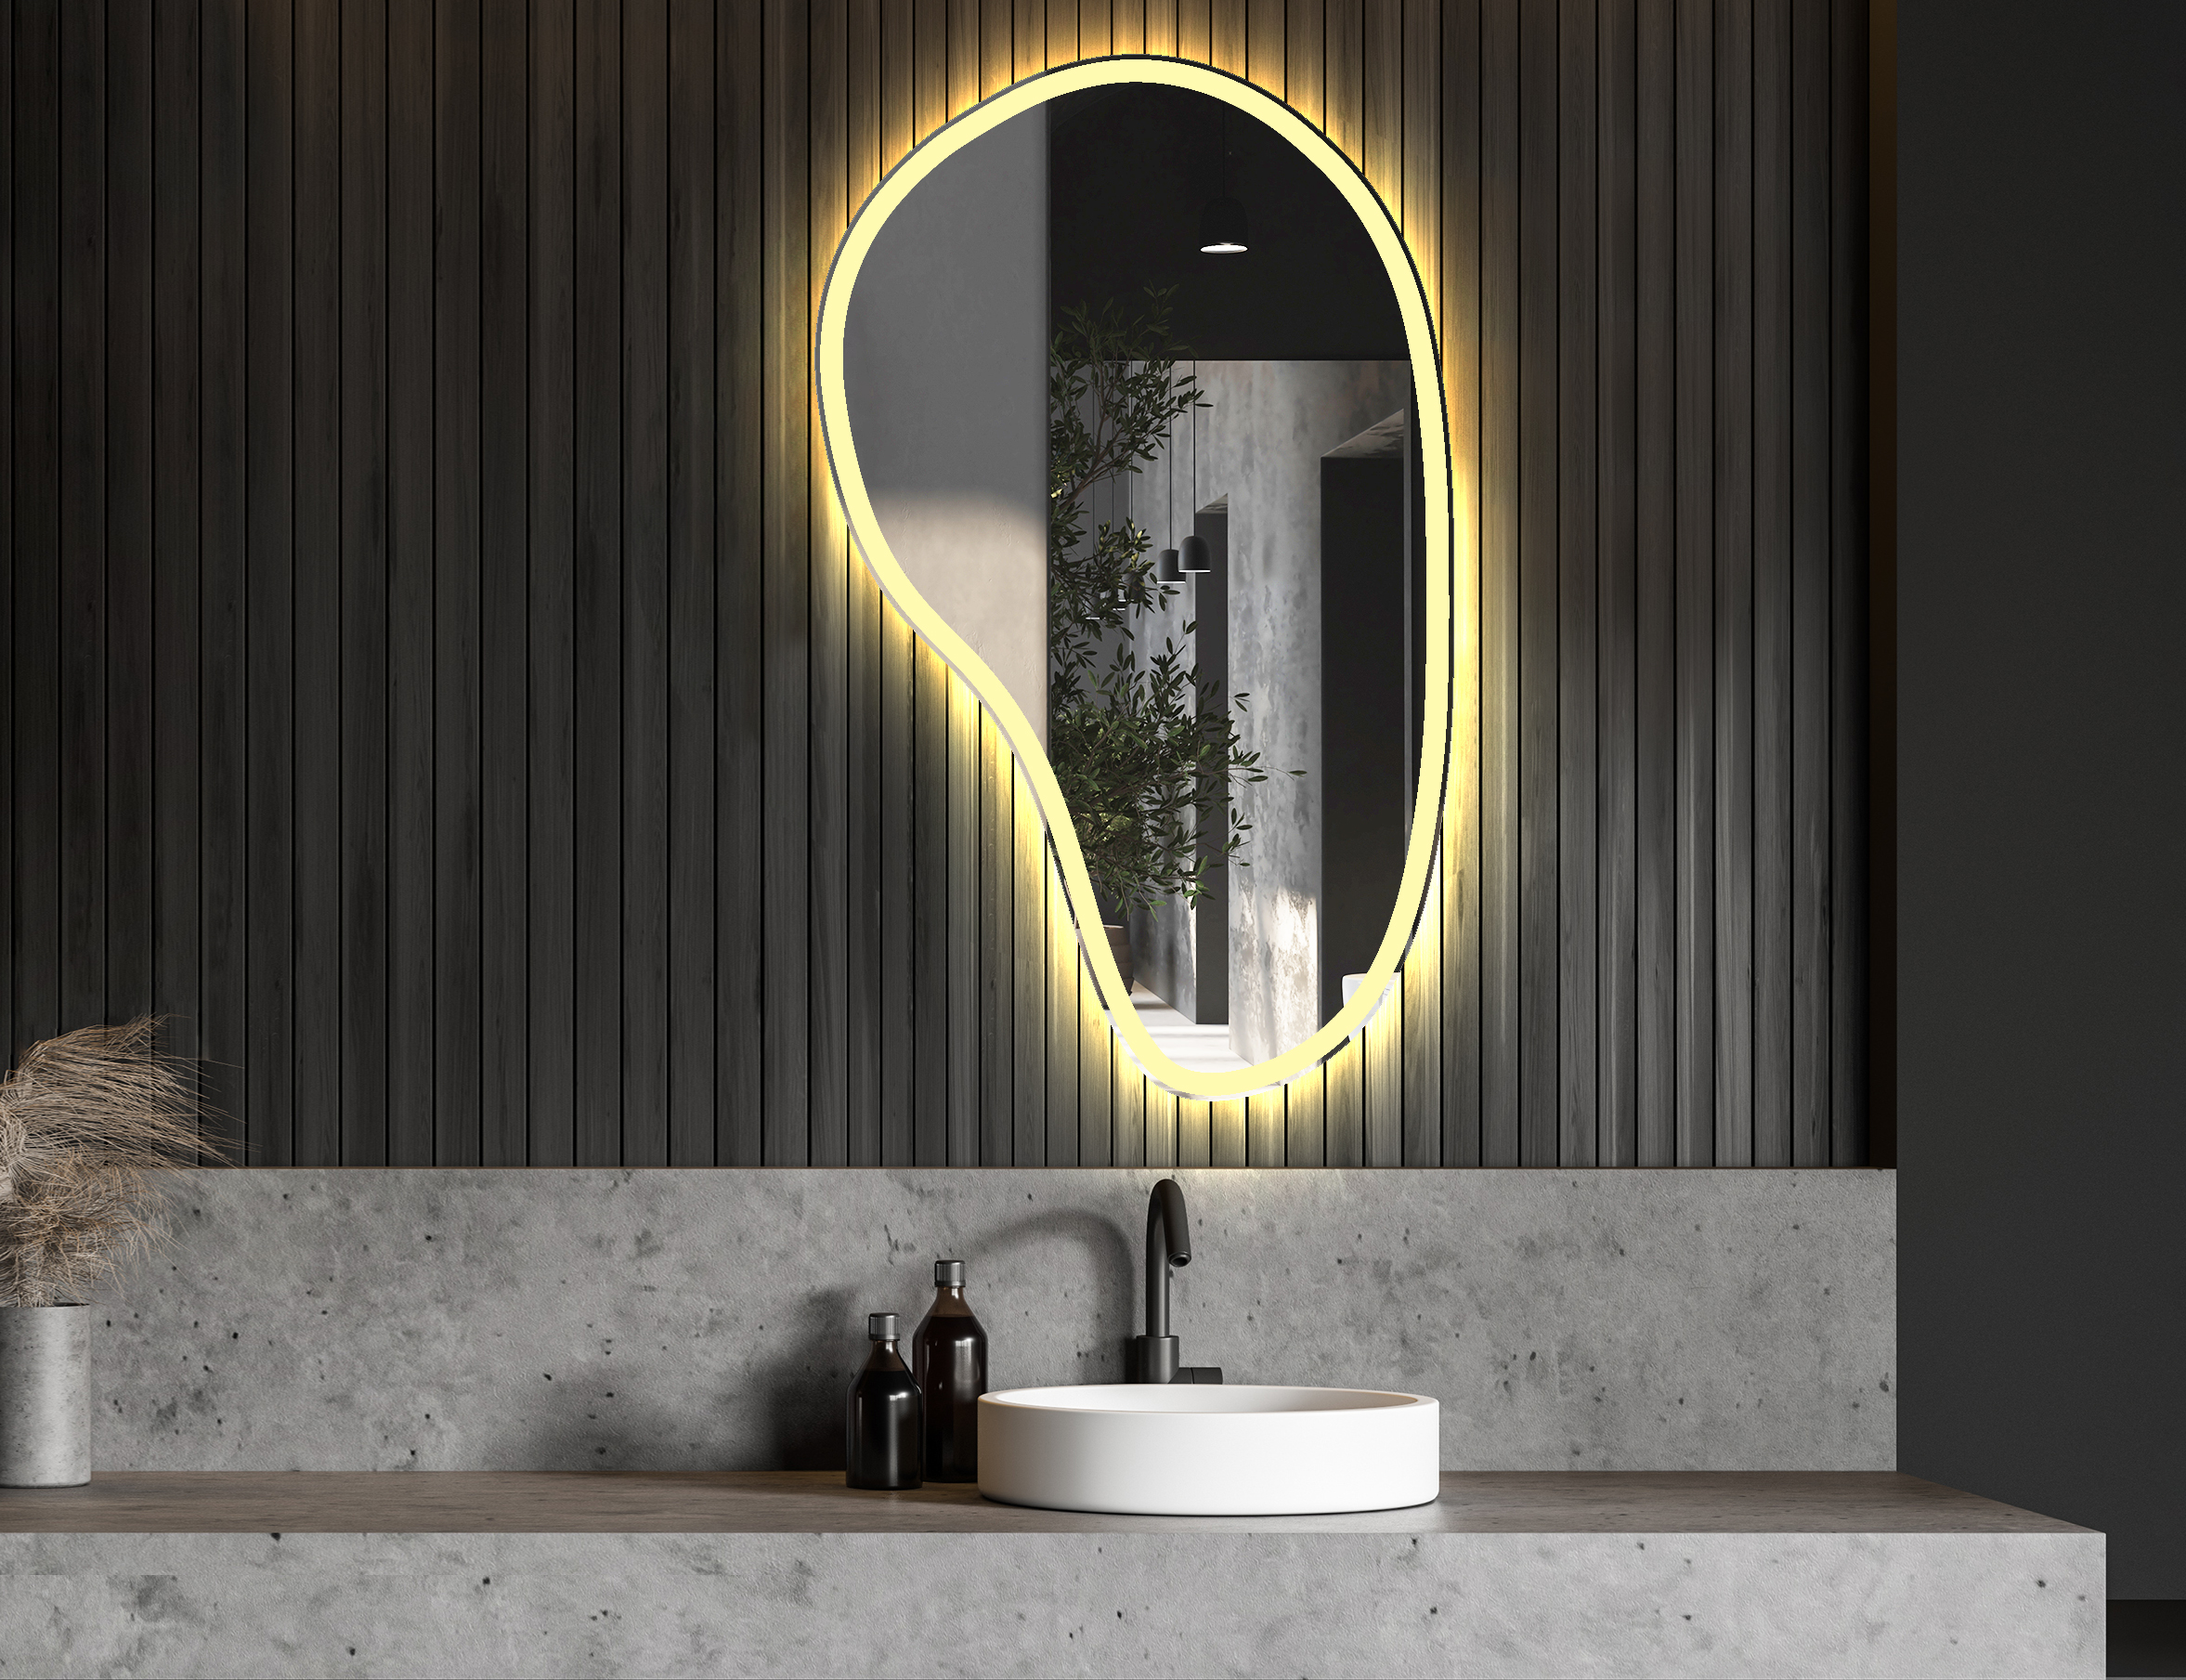 Le fait de pouvoir choisir la couleur de l'éclairage du produit vous permet de l'adapter au climat de votre salle de bains.